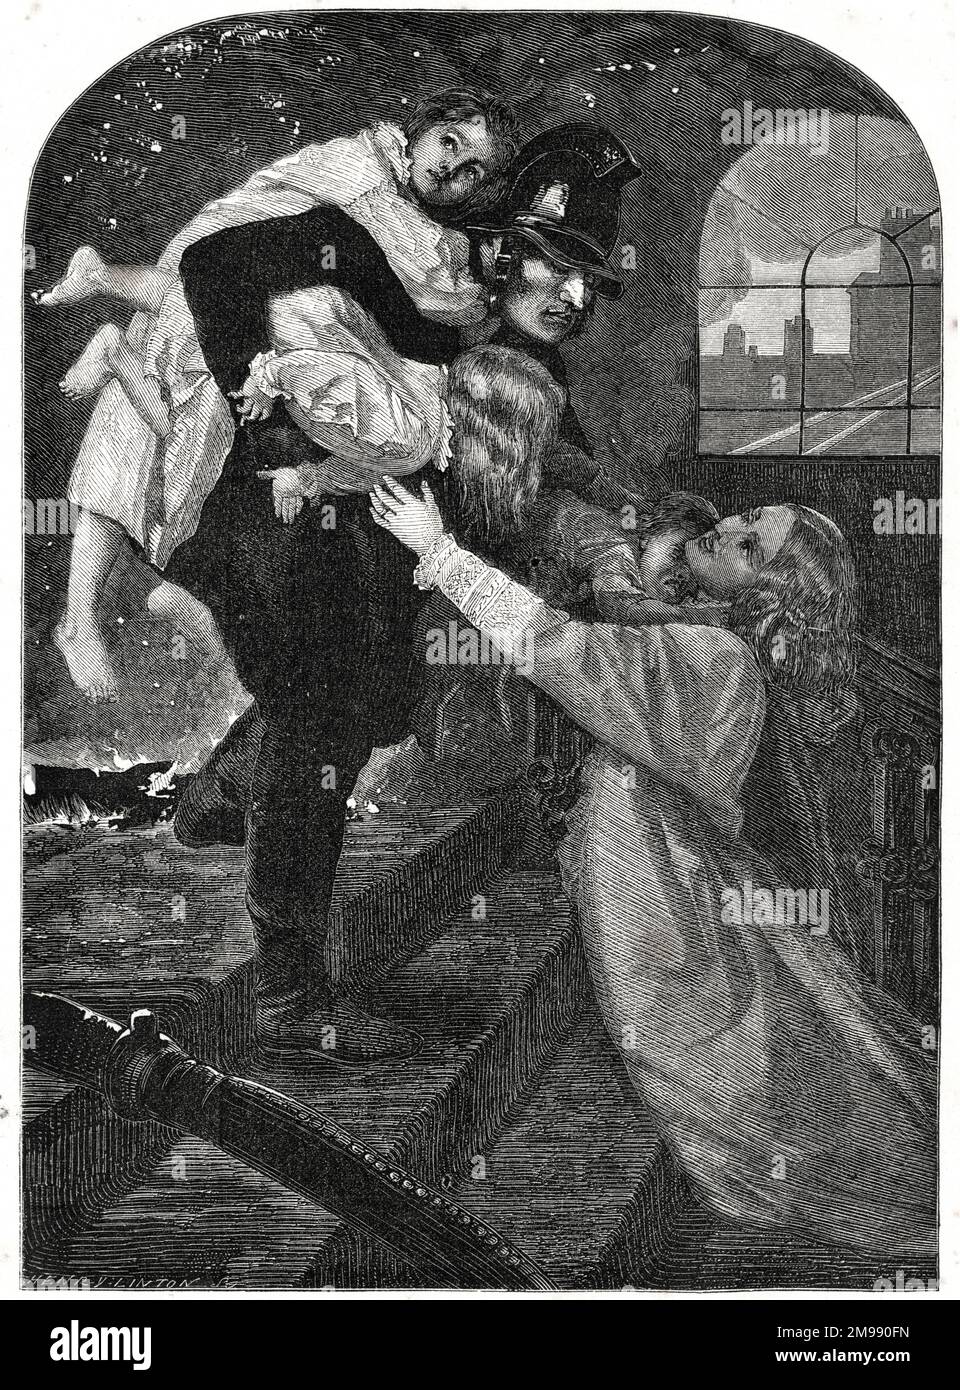 John Everett Millais, The Rescue - un pompier sauve trois enfants et les renvoie à leur mère. Banque D'Images